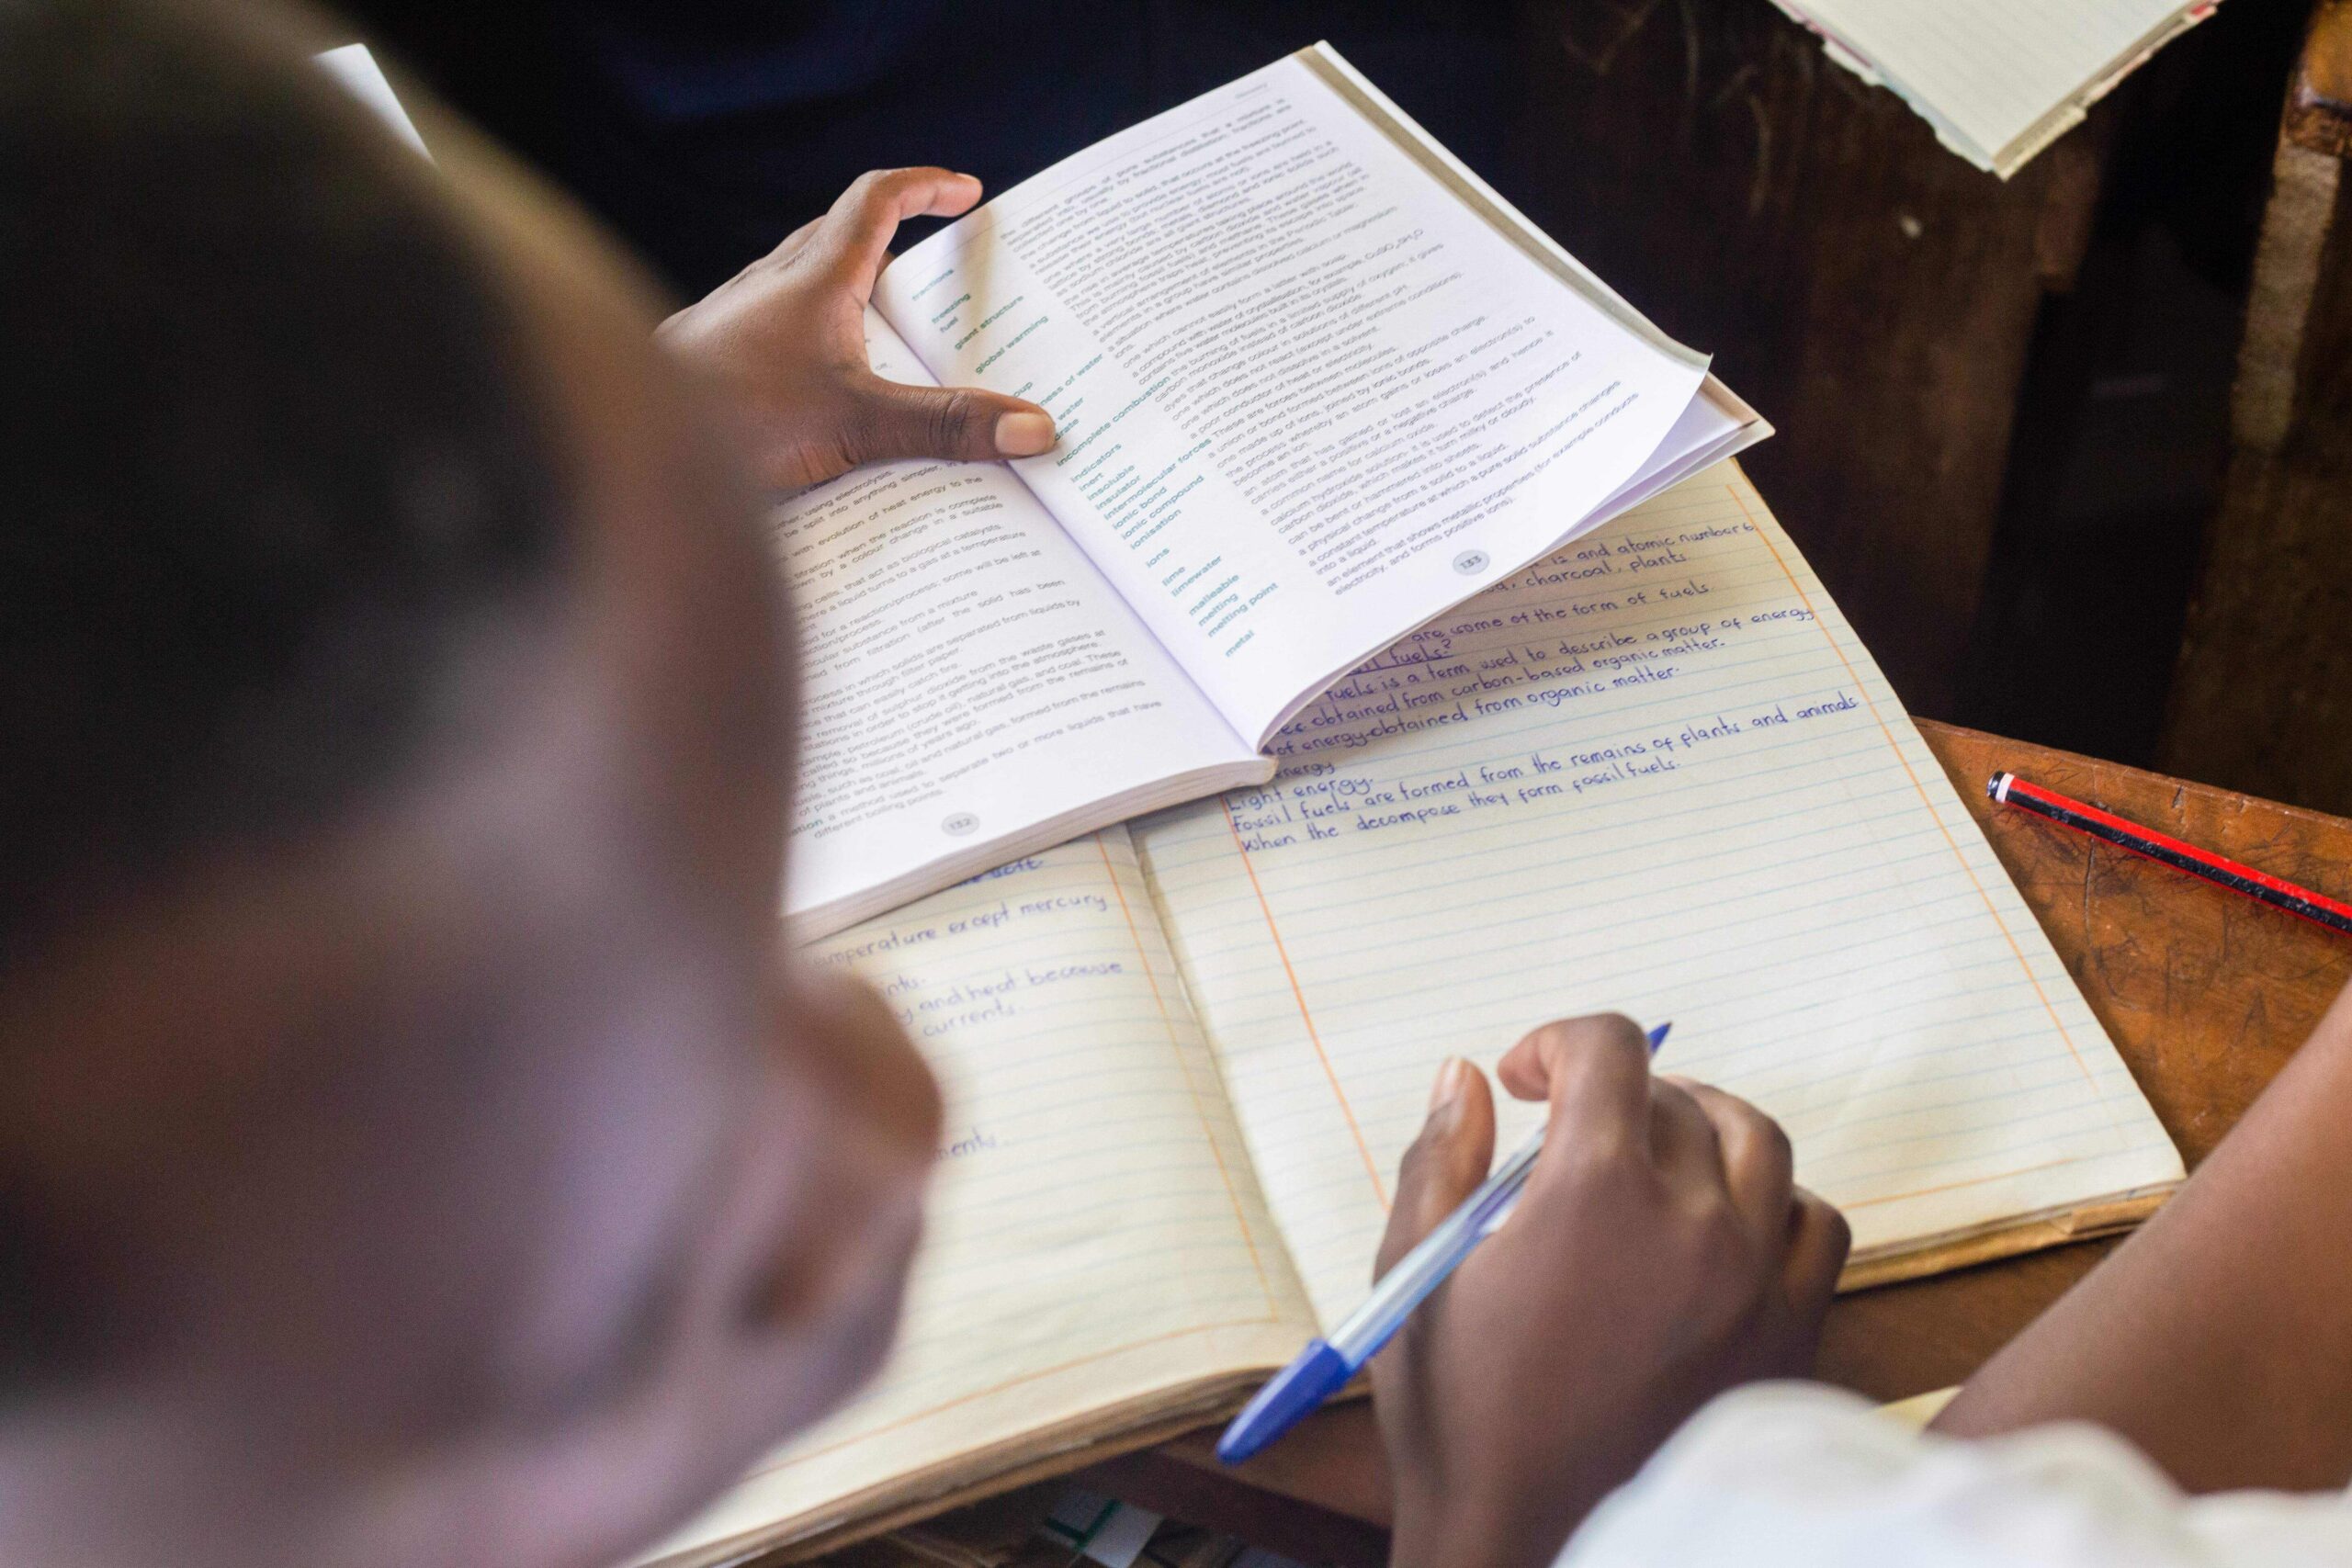 STiR Education launches in Ethiopia